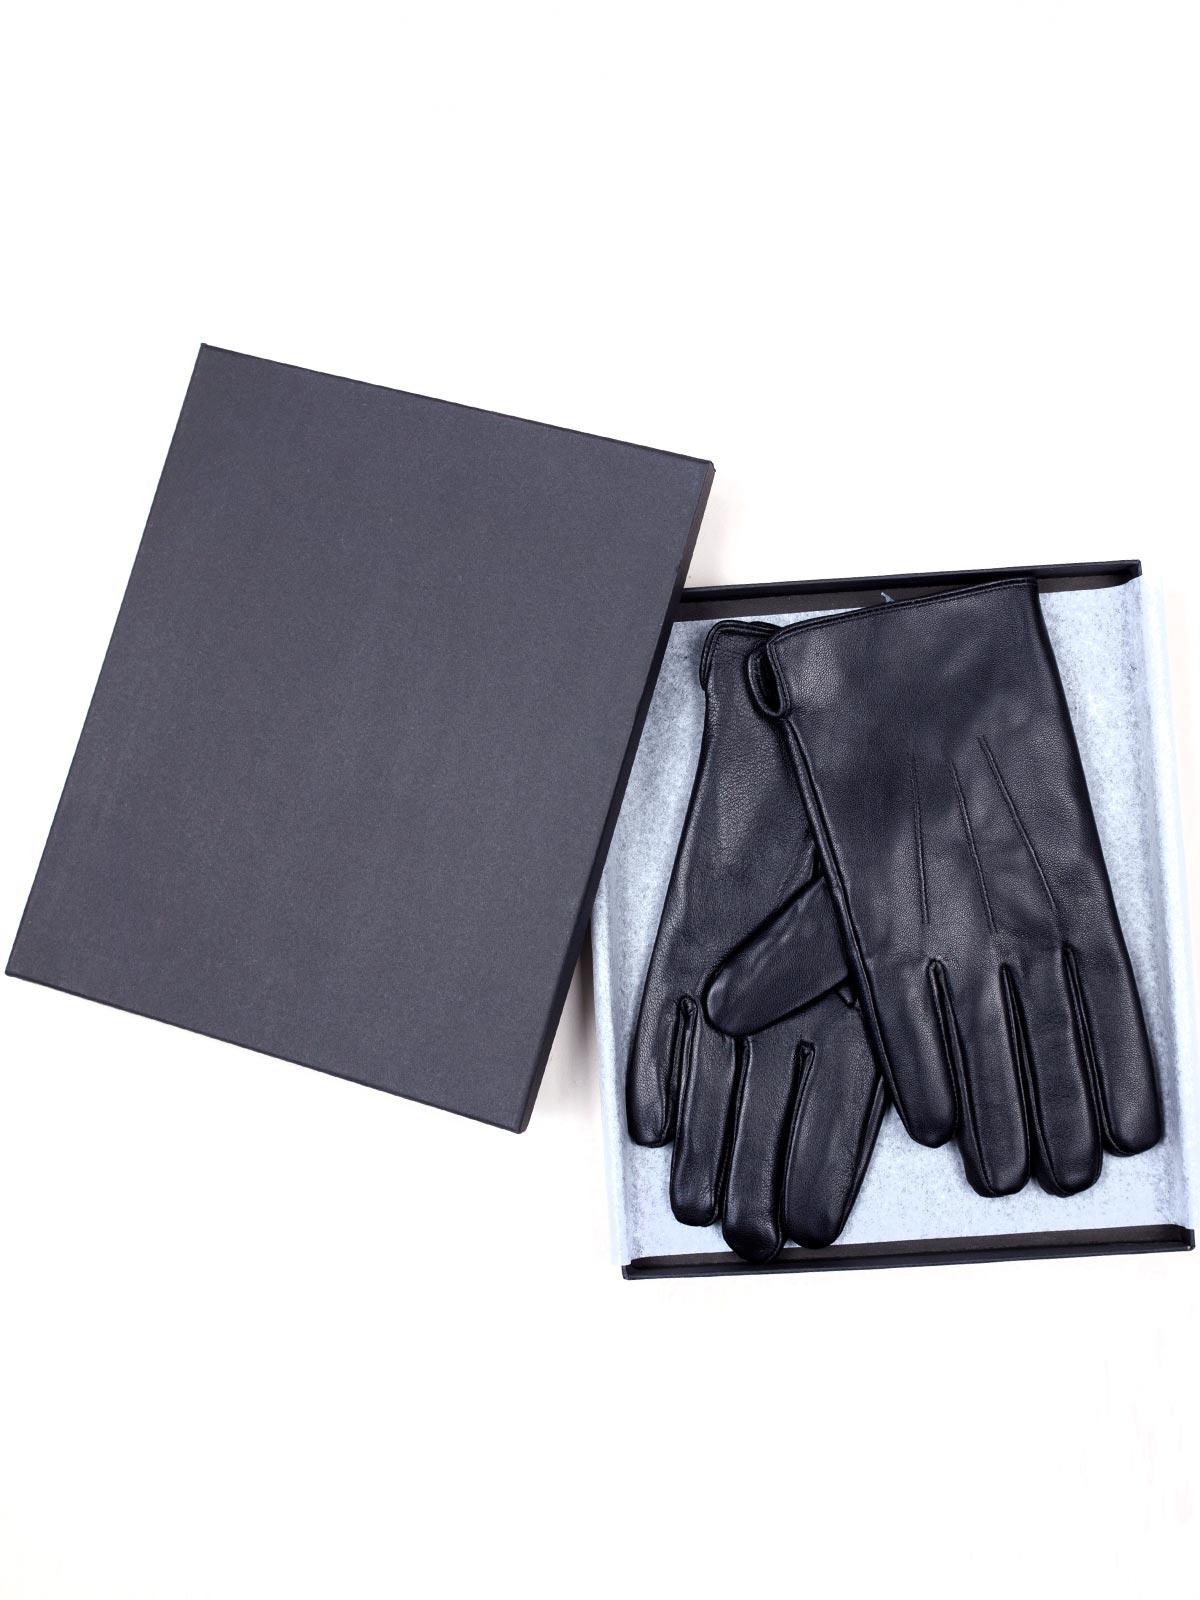  δερμάτινα γάντια με διακοσμητικές ραφές - 10572 - € 31.50 img3